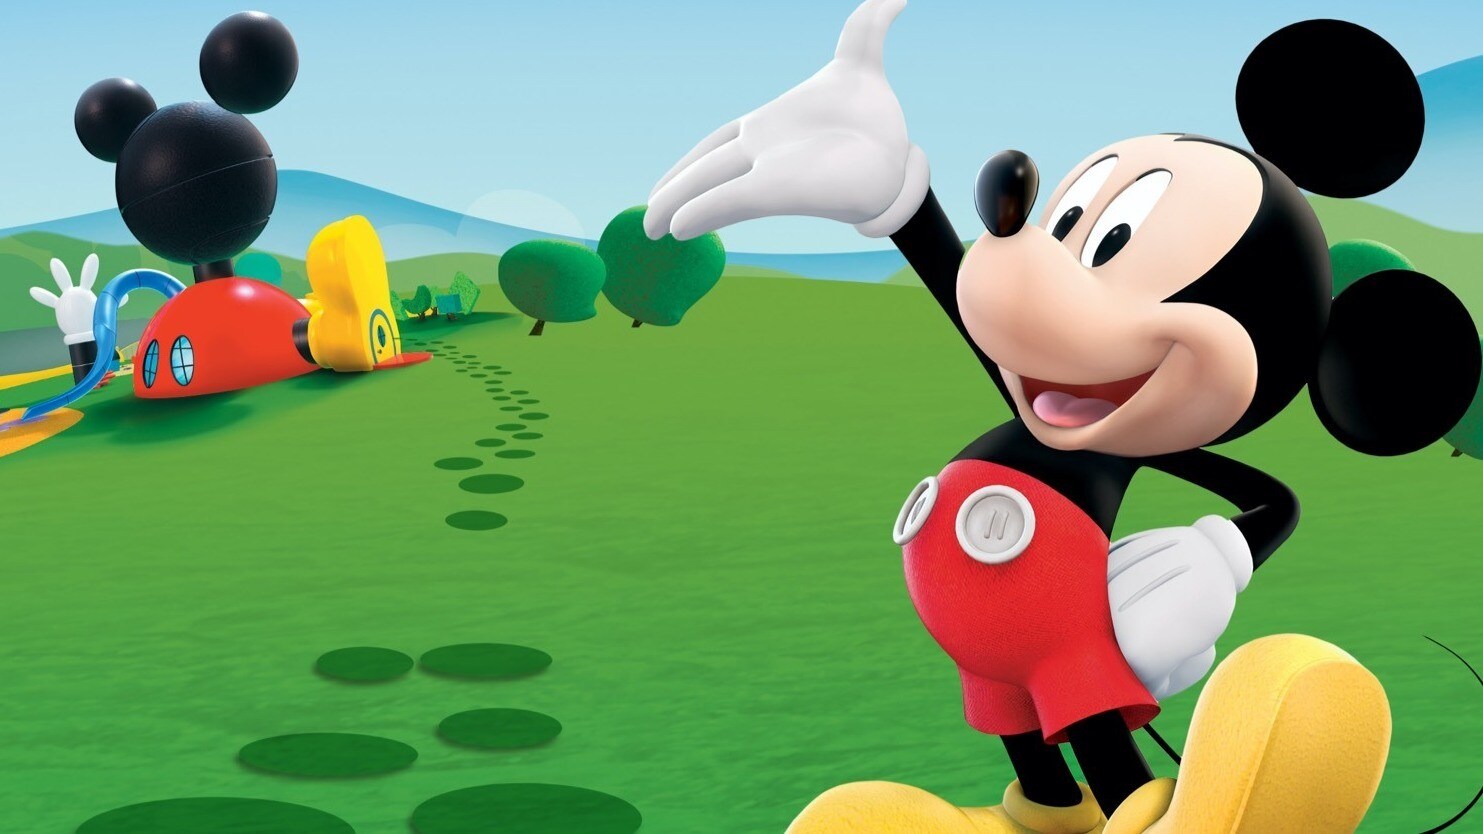 La casa de Mickey Mouse: la nueva serie de Disney+ lleva a los niños a vivir aventuras en tierras lejanas